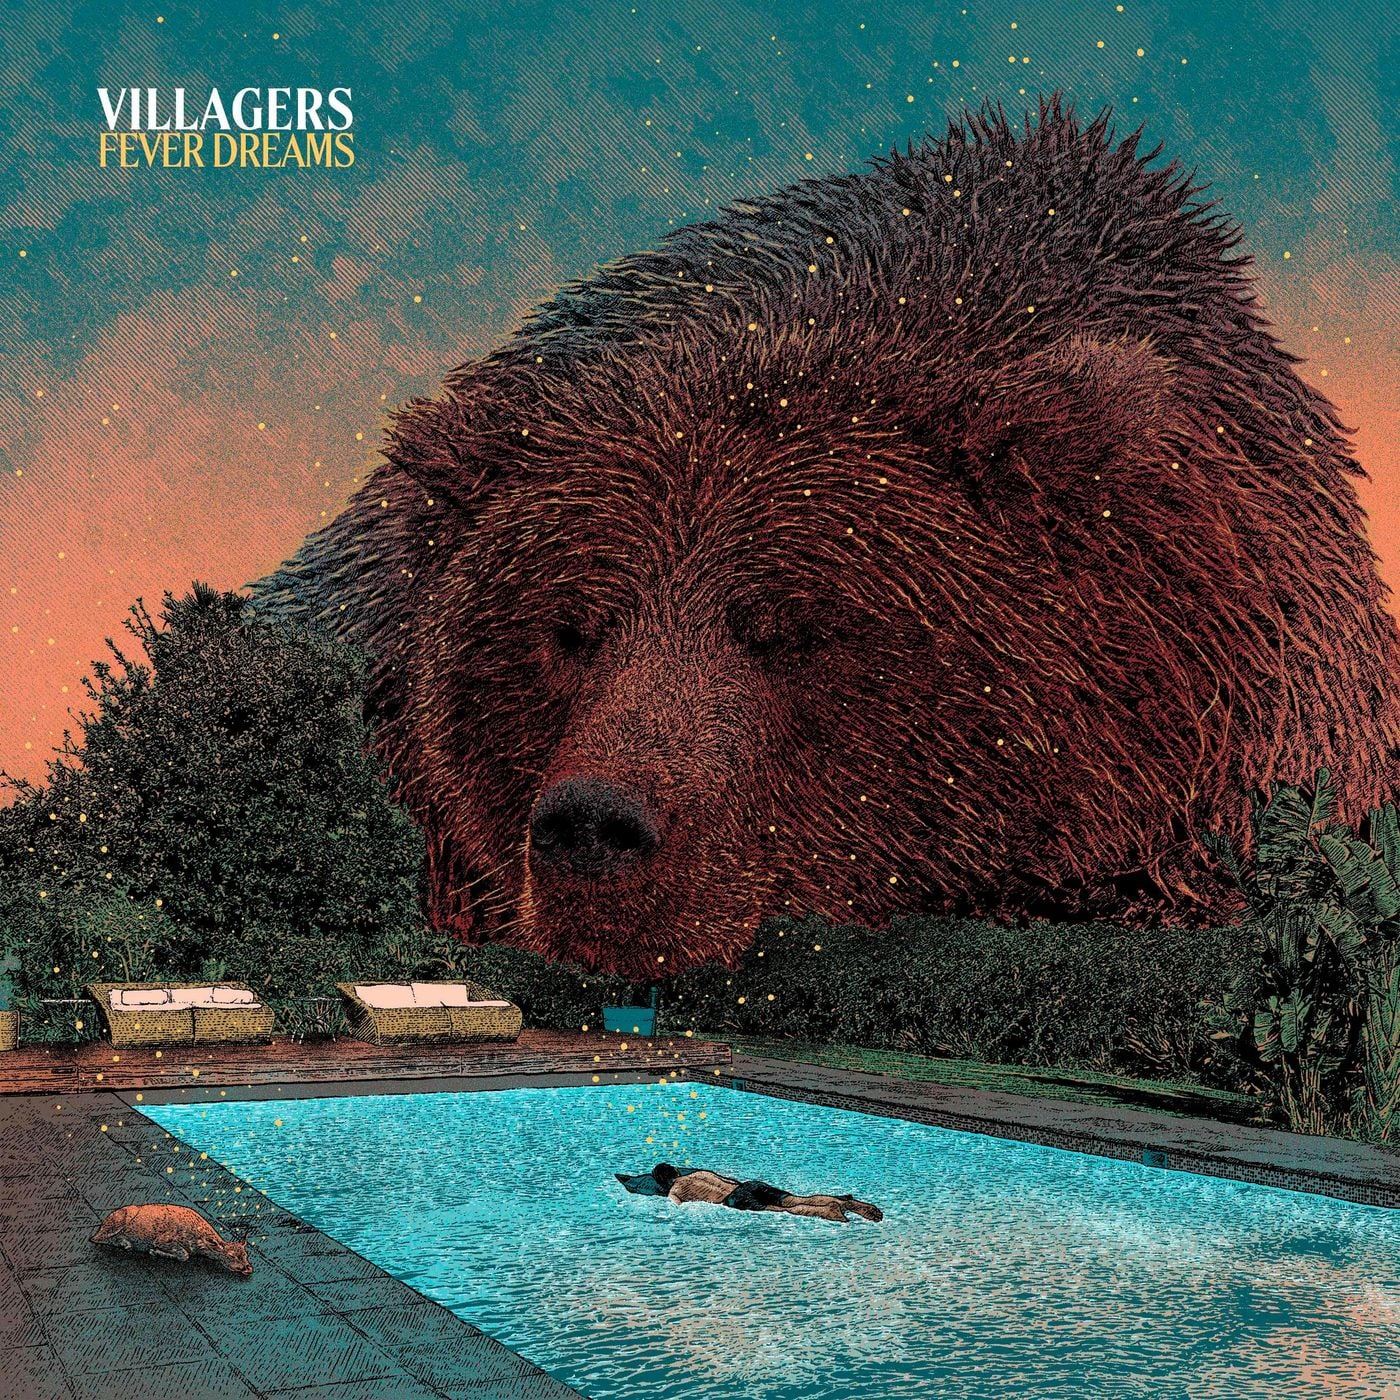 imagen 4 de Villagers desvelan un espectacular video para un single extraído de su nuevo álbum.